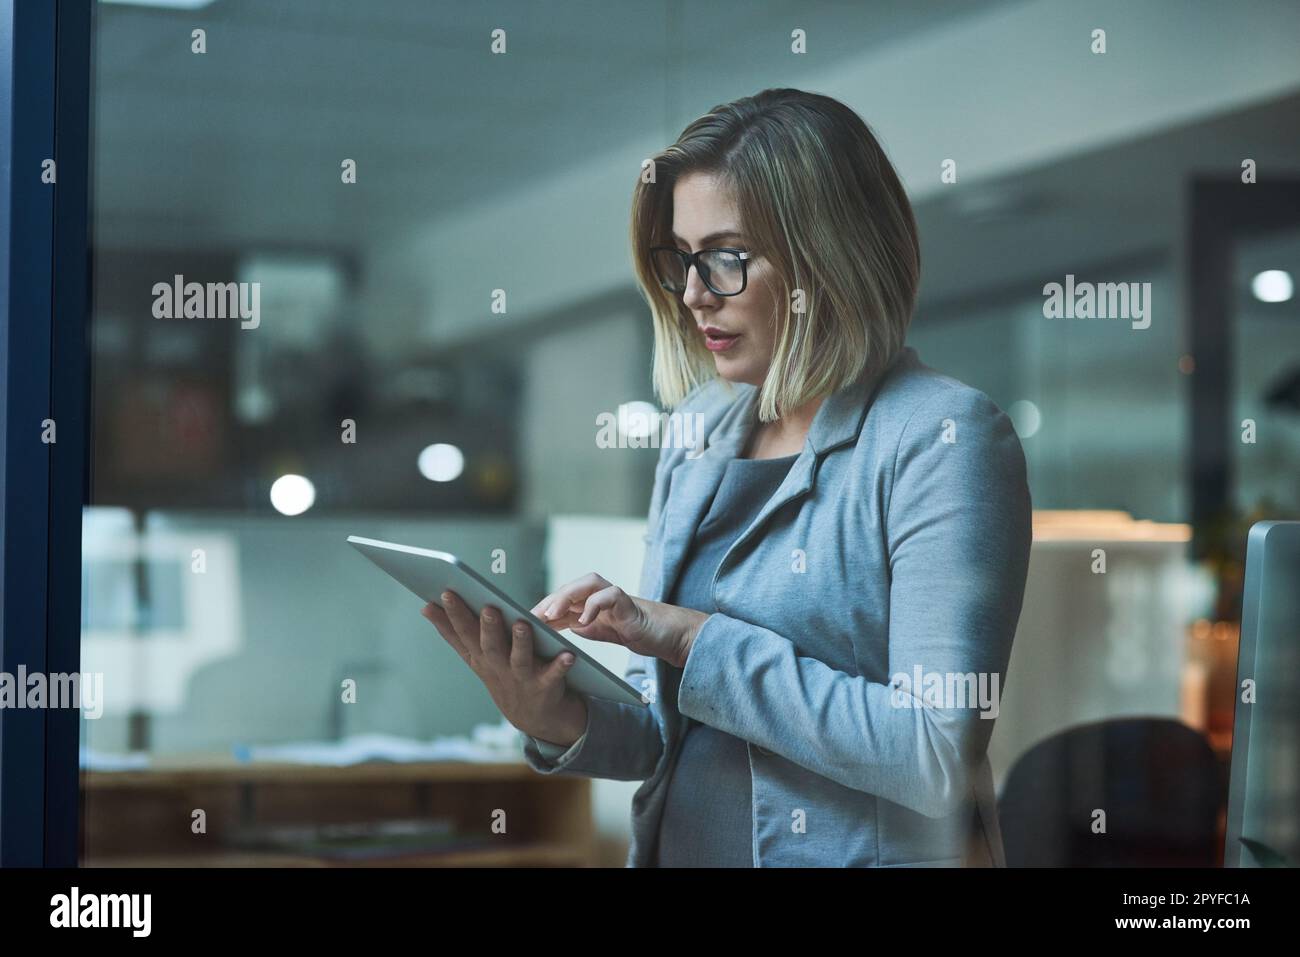 Travailler plus intelligemment, pas plus dur. une femme d'affaires travaillant sur une tablette numérique dans son bureau tard dans la nuit. Banque D'Images